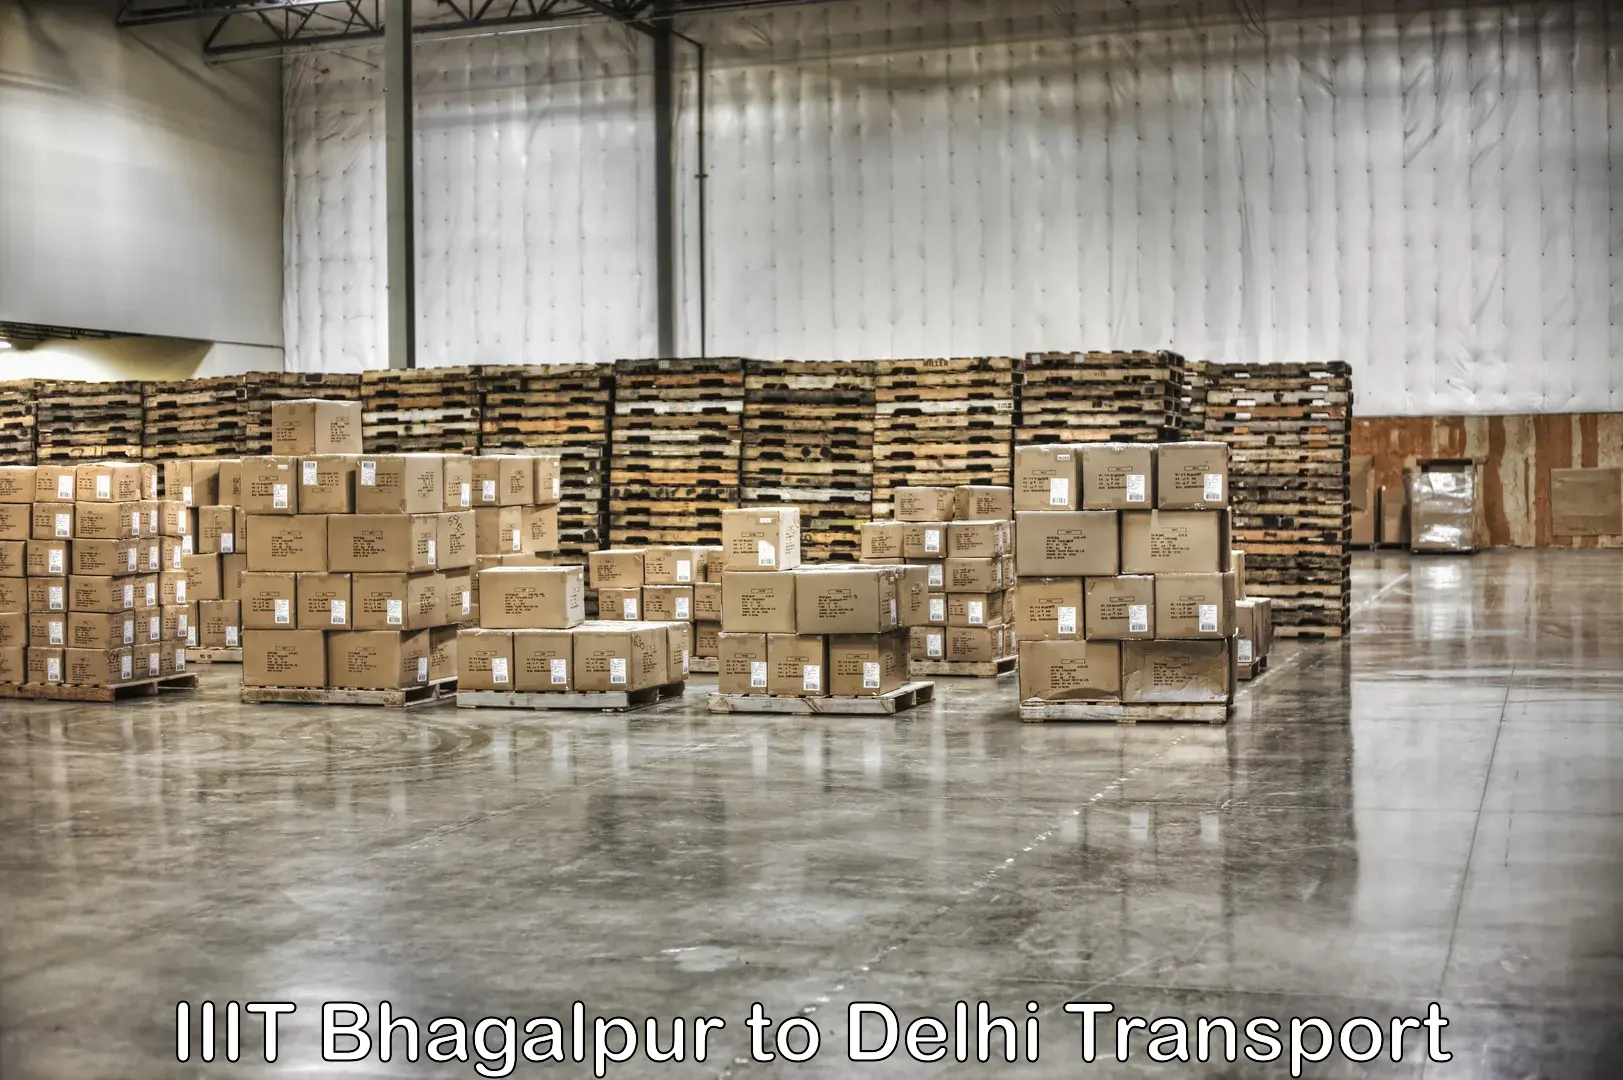 Nearest transport service IIIT Bhagalpur to Delhi